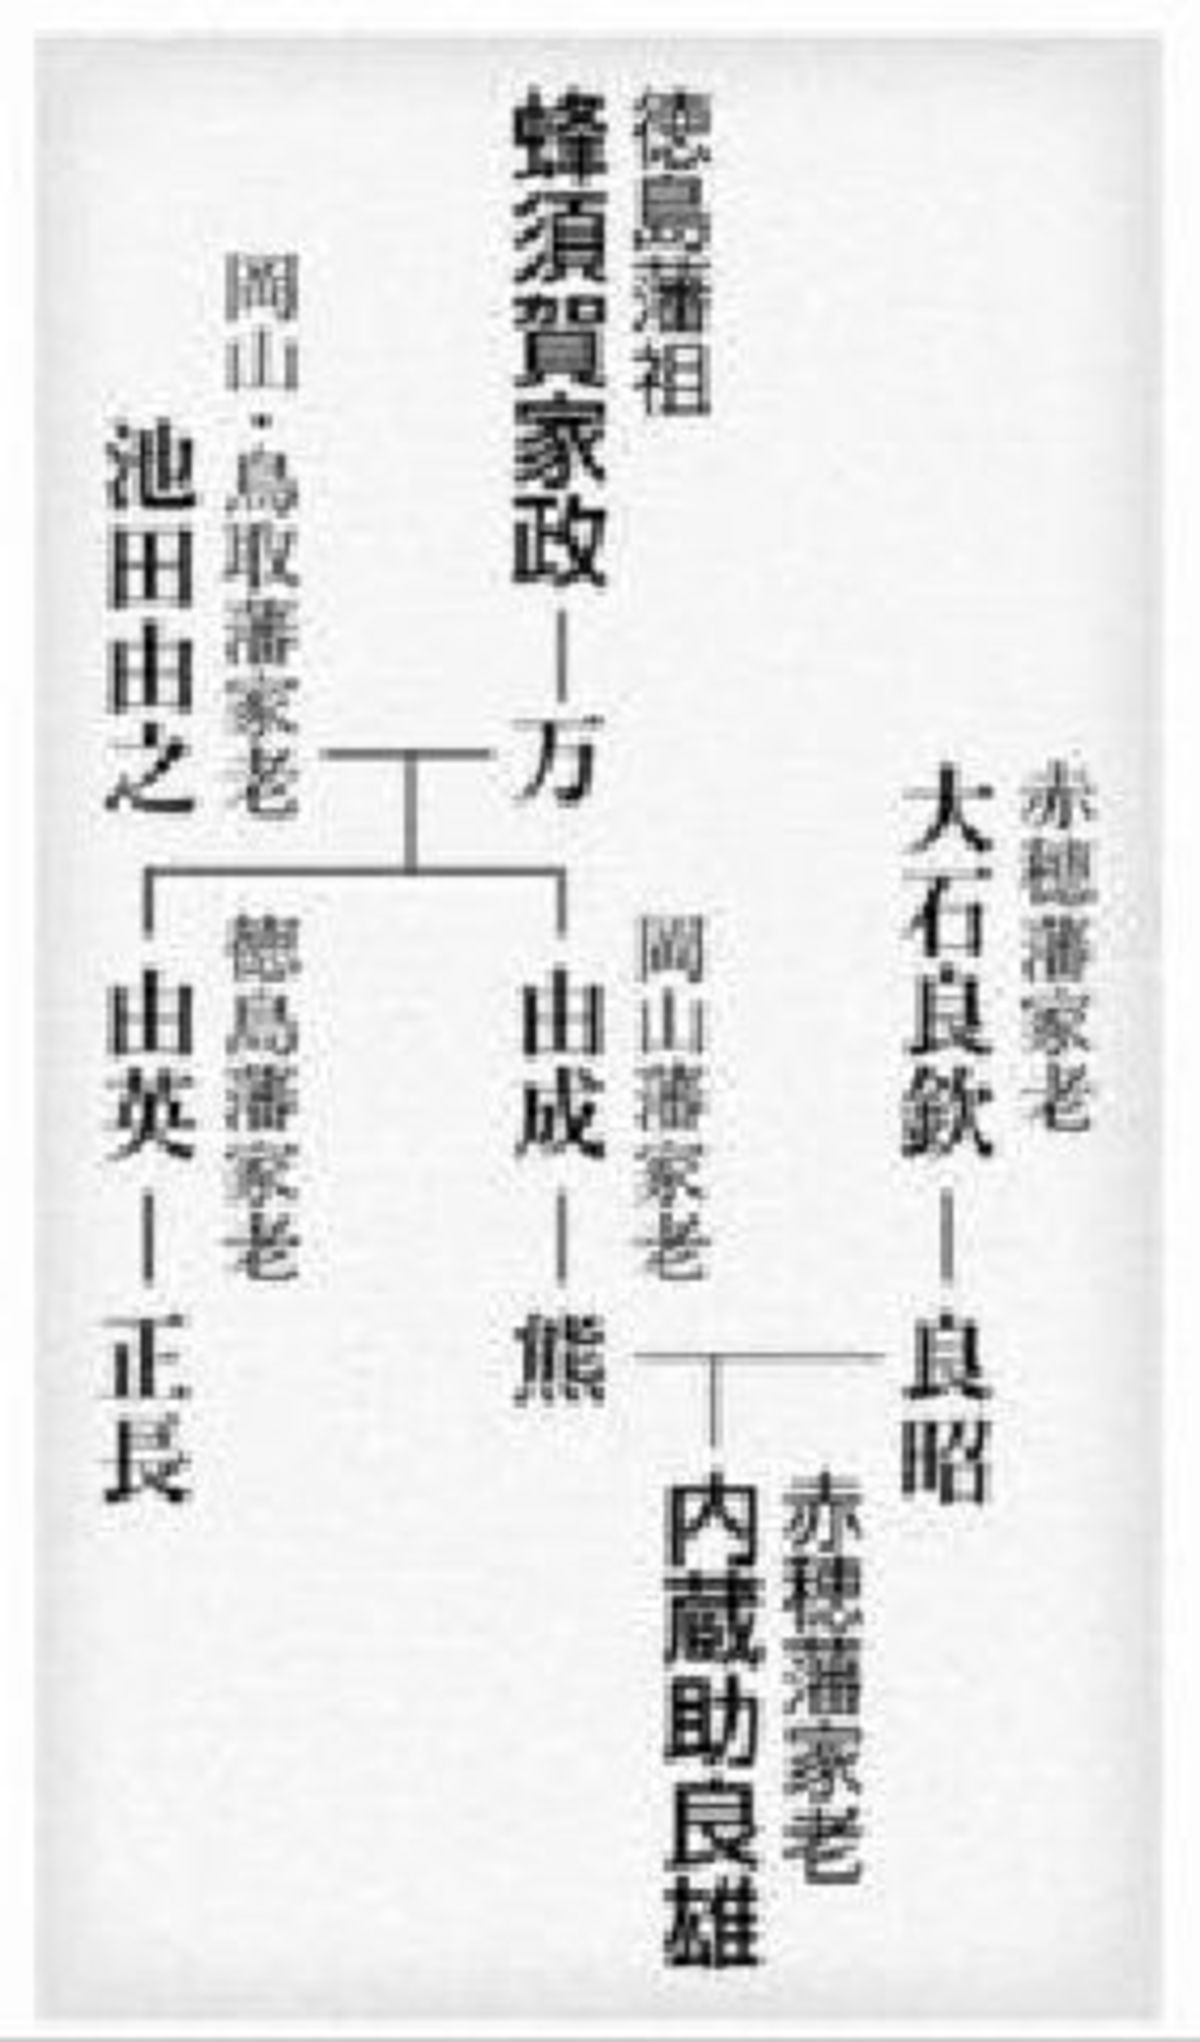 忠臣蔵 大石内蔵助のルーツは徳島にあった 徳島ニュース 徳島新聞